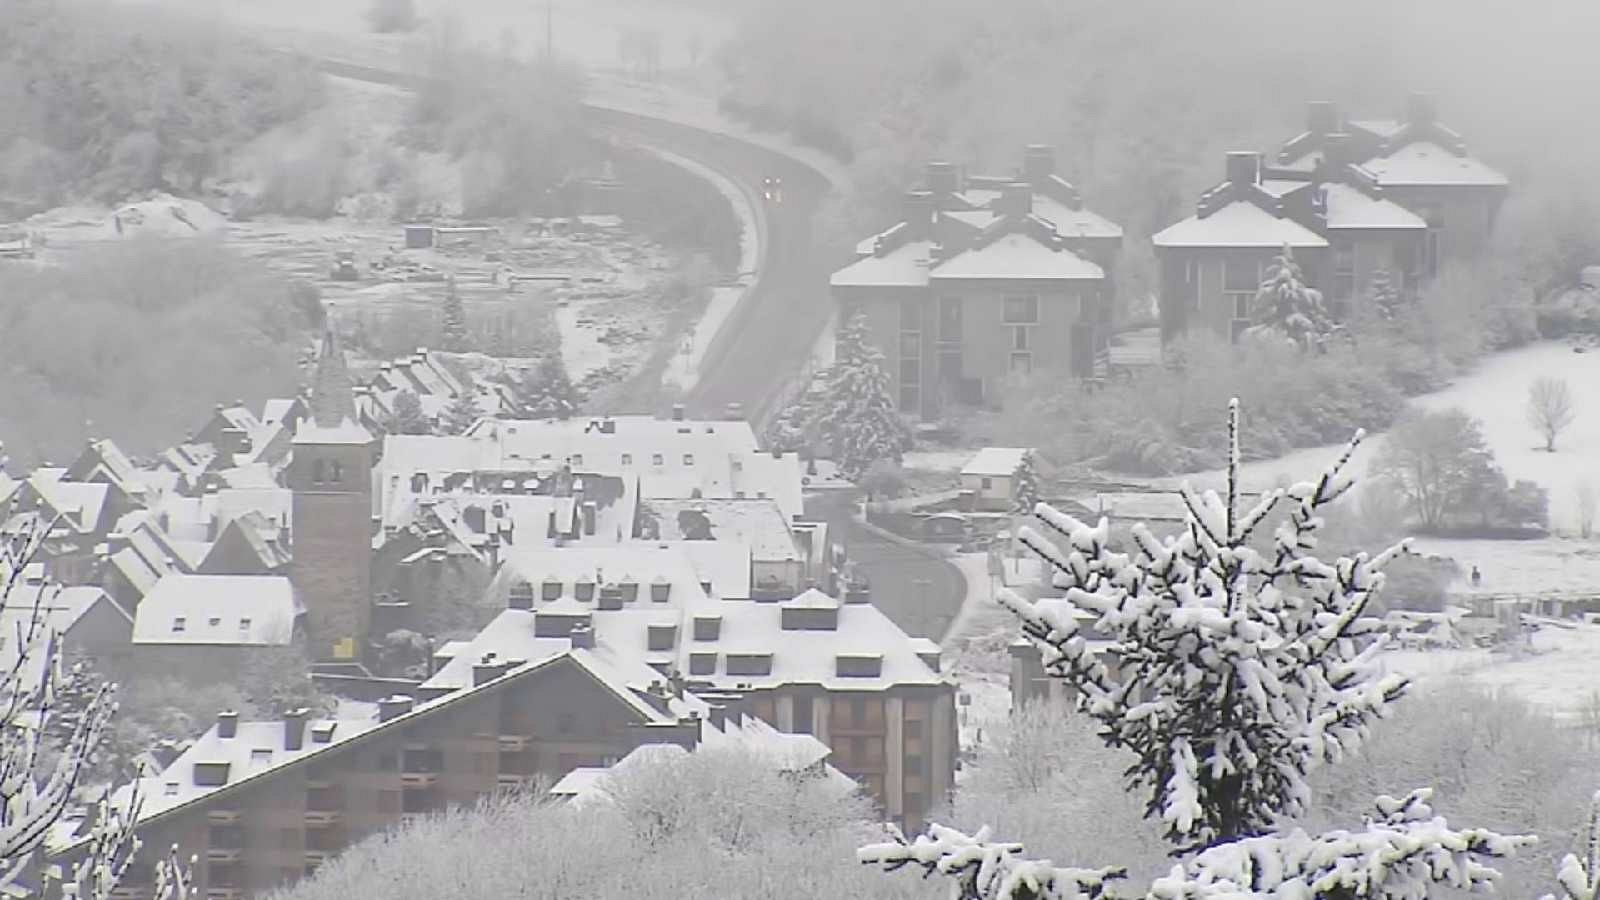 La neu ja tenyeix de blanc la cara nord del Pirineu